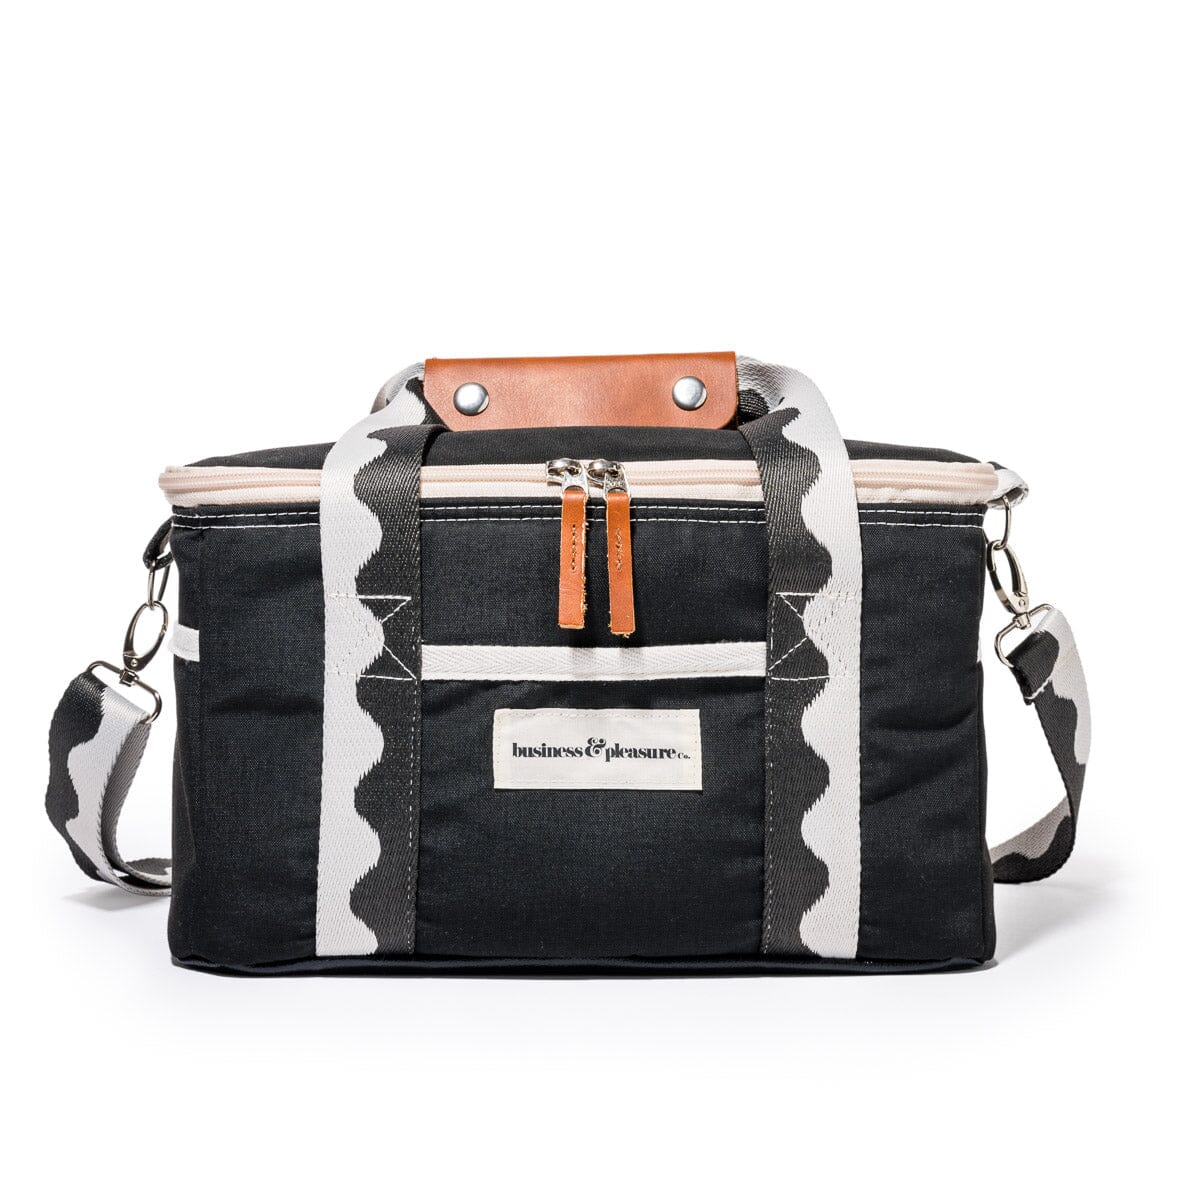 The Premium Cooler Bag - Rivie Black Premium Cooler Business & Pleasure Co 